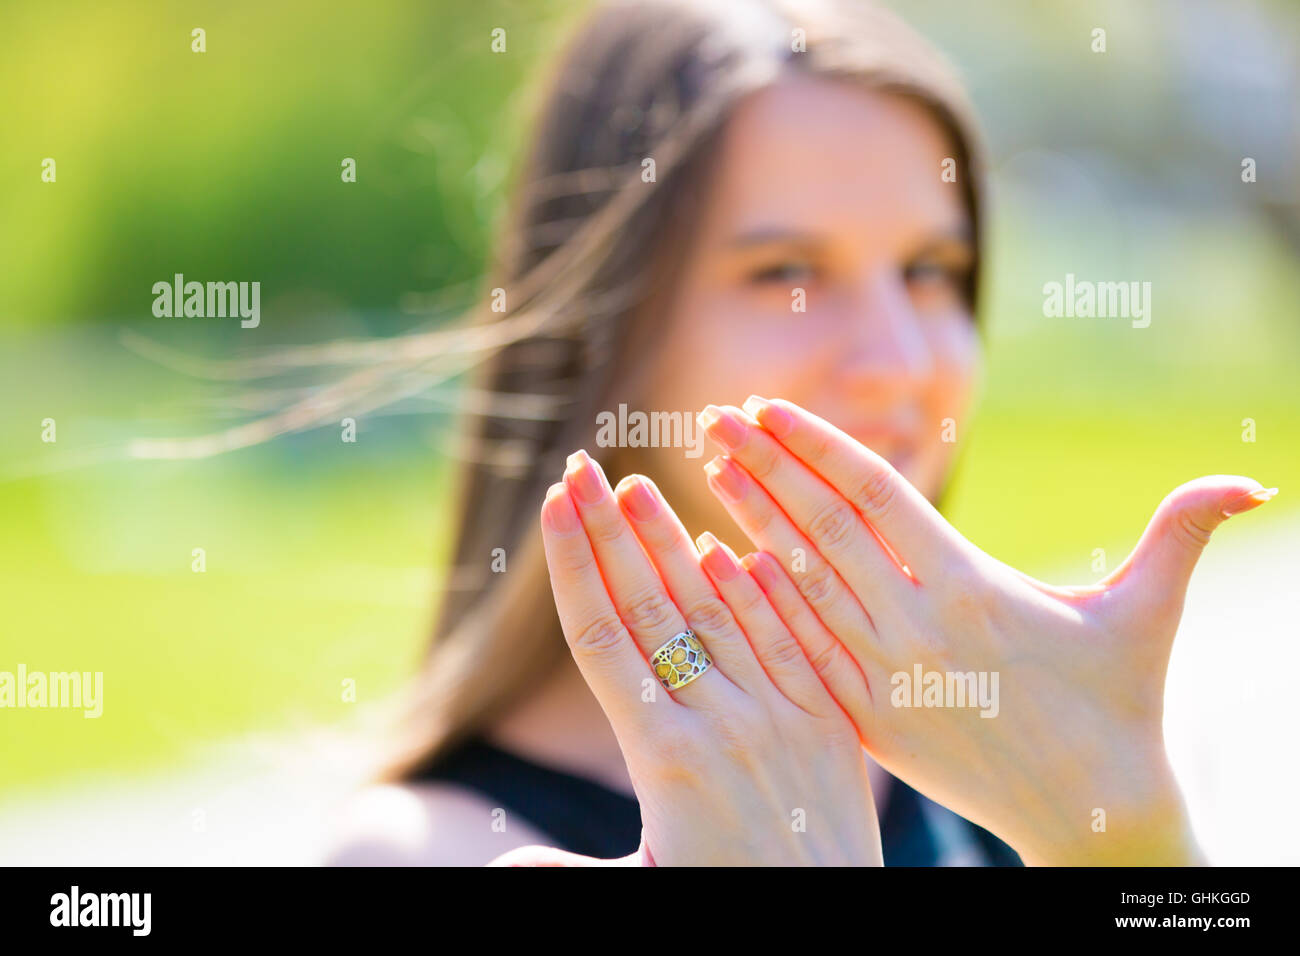 Girl montre des mains avec nail design Banque D'Images